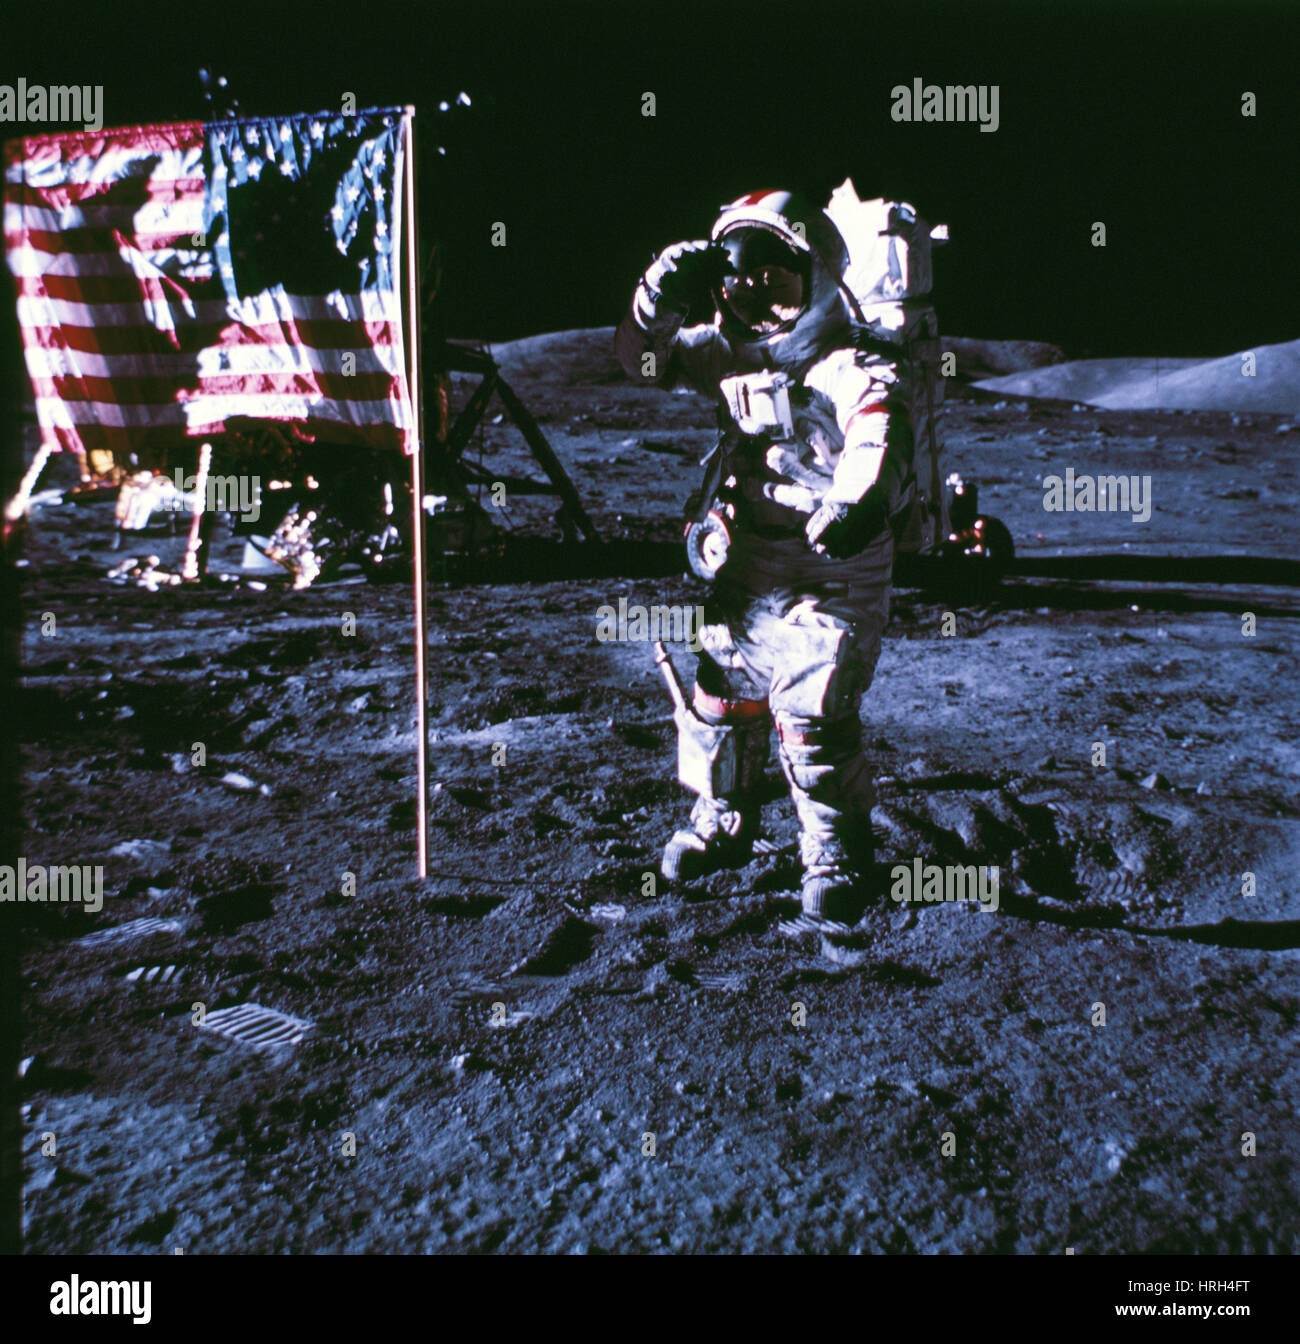 Apollo mission 17 Stock Photo